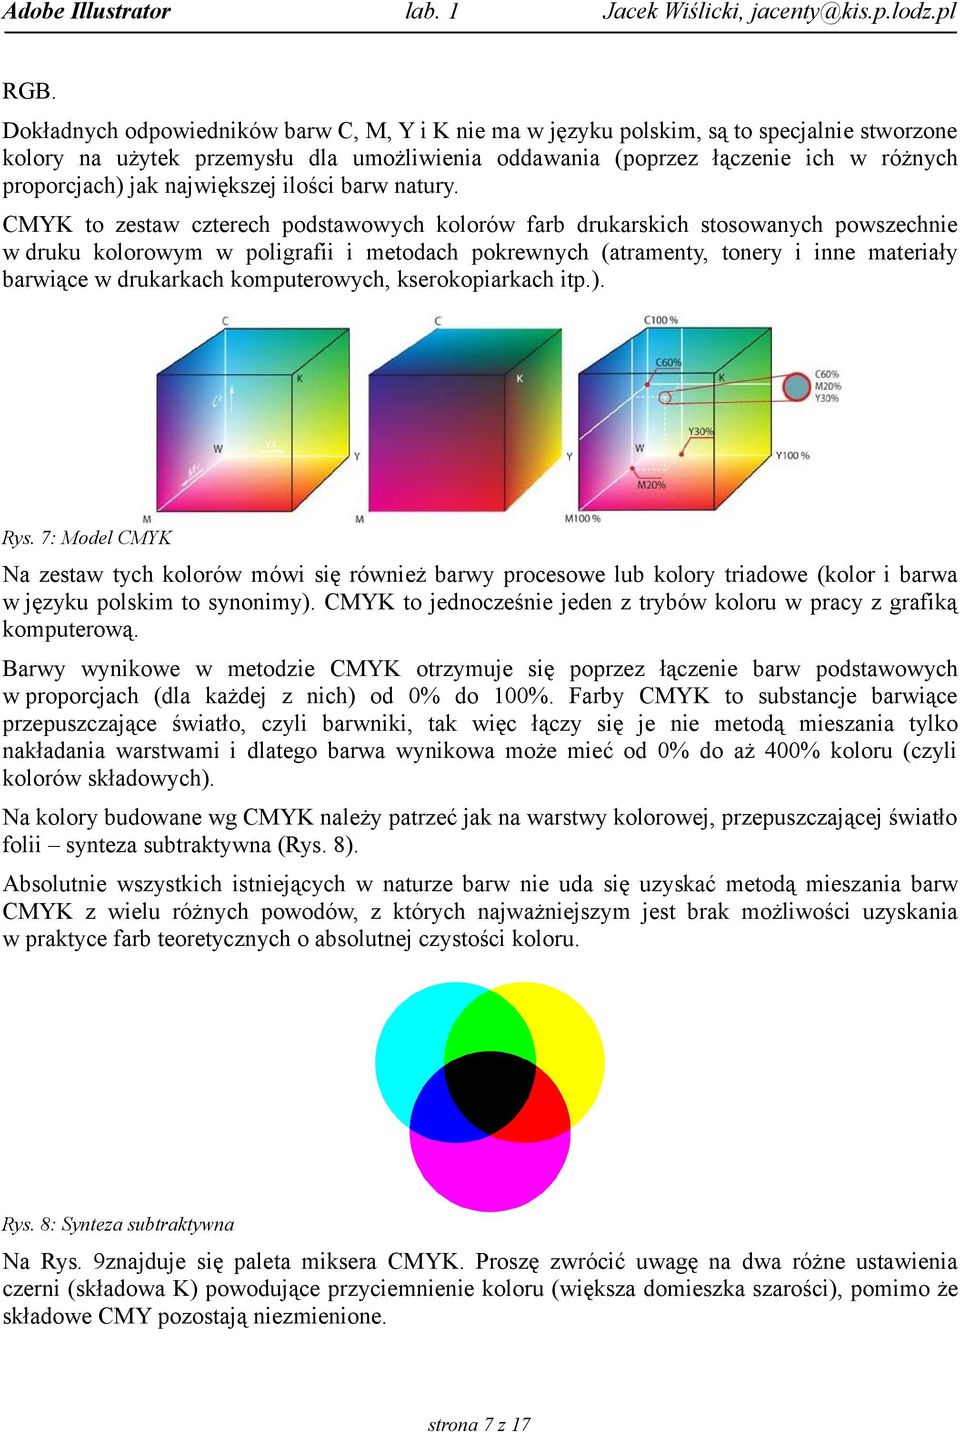 CMYK to zestaw czterech podstawowych kolorów farb drukarskich stosowanych powszechnie w druku kolorowym w poligrafii i metodach pokrewnych (atramenty, tonery i inne materiały barwiące w drukarkach